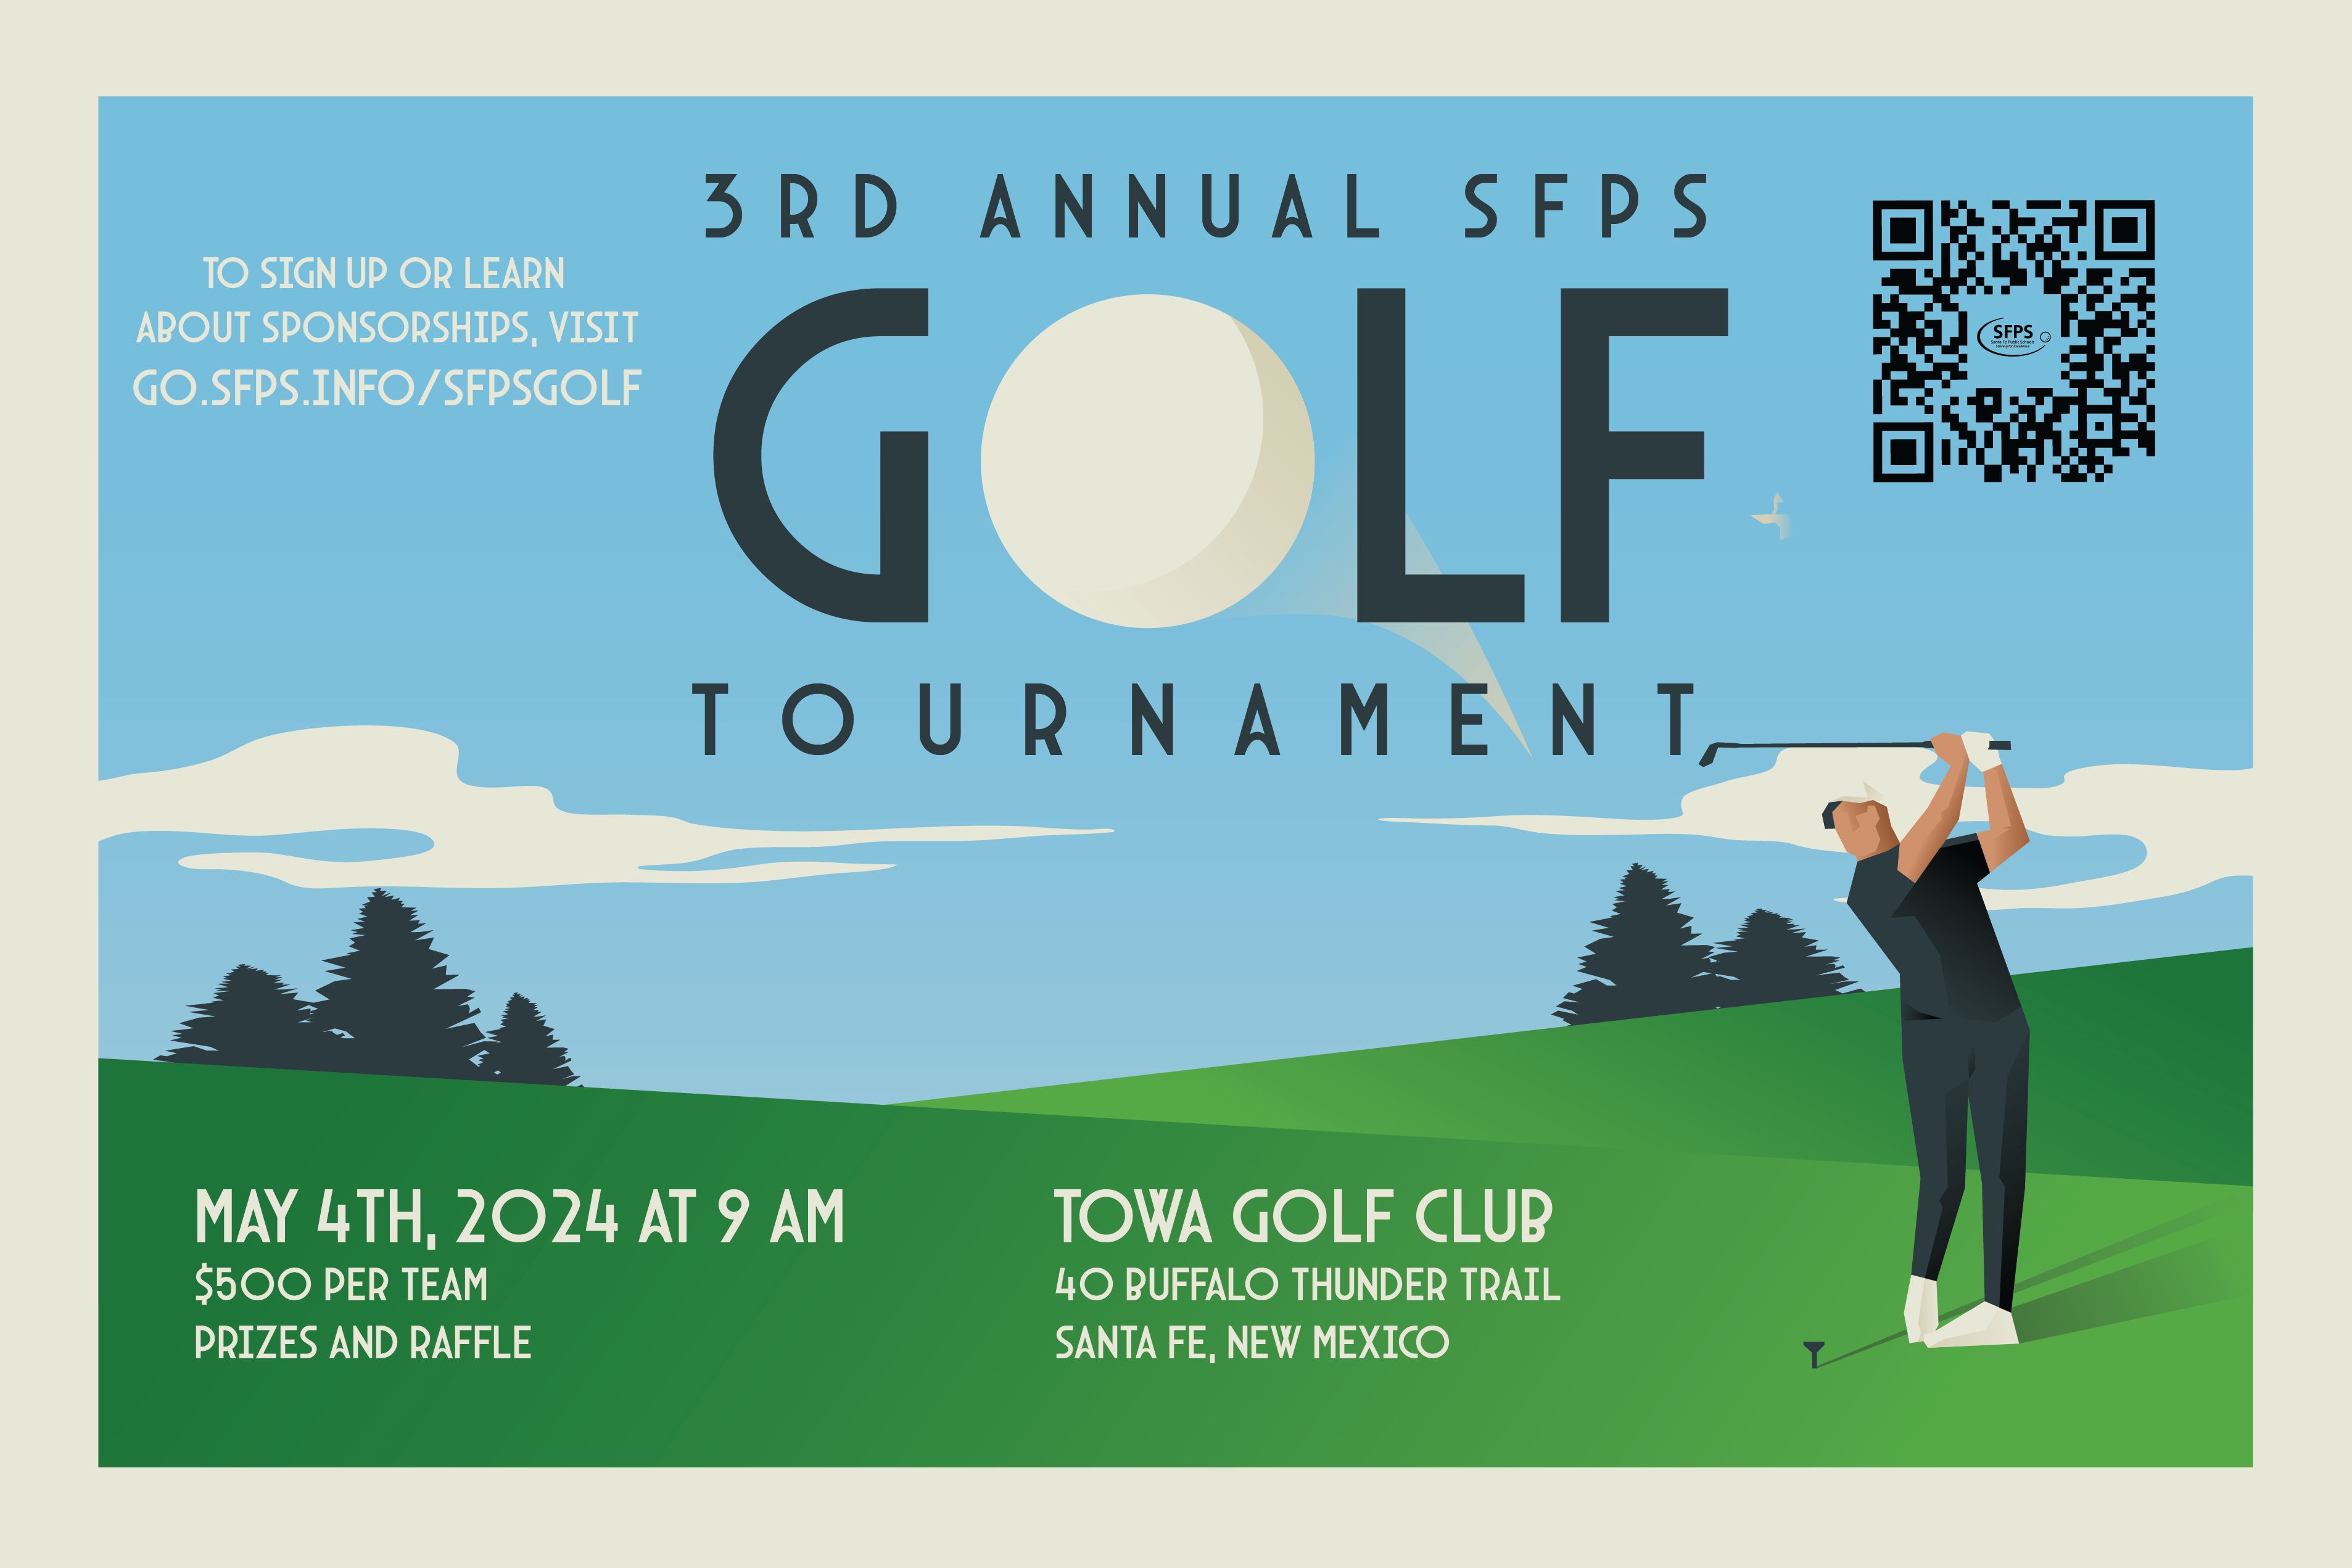 3rd Annual SFPS Golf Tournament May 4th, 2024 at 9 AM $500 per team, prizes and raffle Towa Golf Club 40 Buffalo Thunder Trail, Santa Fe NM